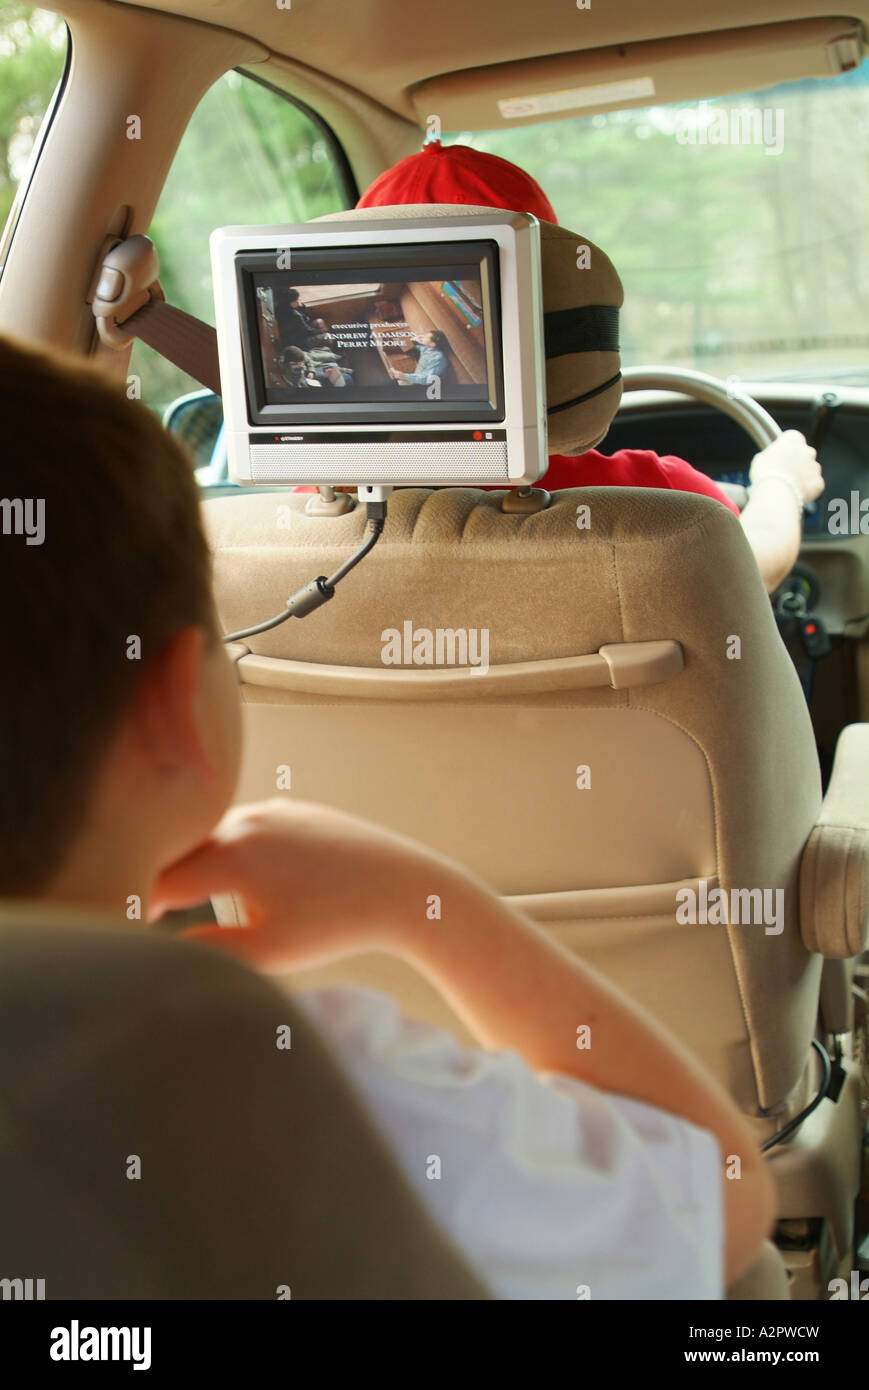 Un bambino di 8 anni ragazzo bianco guarda un film su un DVD player in un mini van automobile mentre la sua mamma aziona la macchina Foto Stock